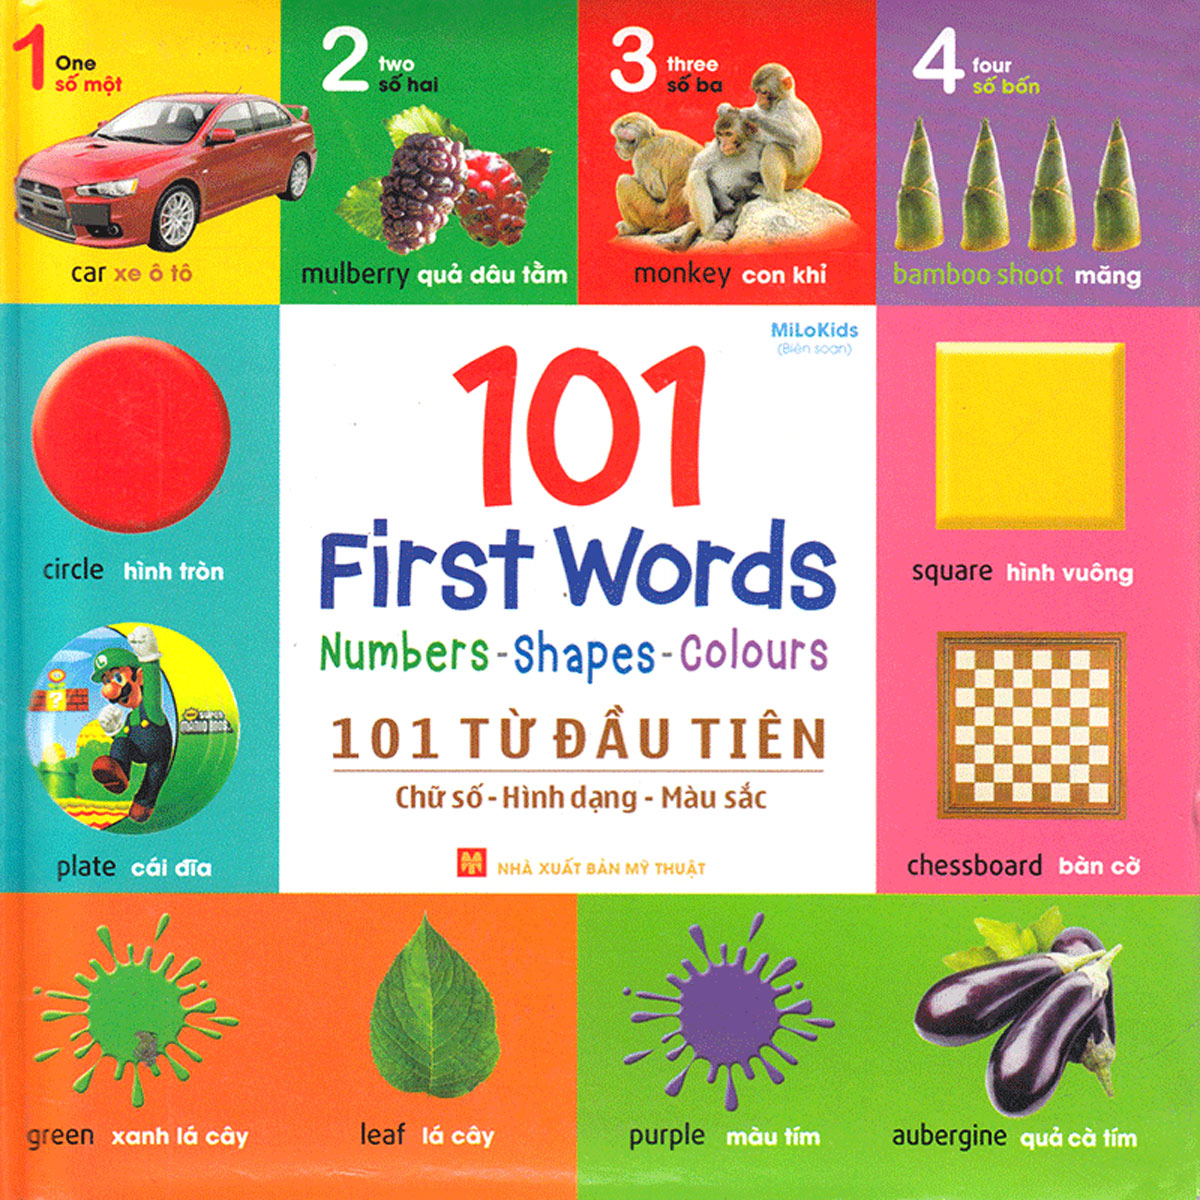 101 First Words: Numbers - Shapes - Colours (101 Từ Đầu Tiên: Chữ Số - Hình Dạng - Màu Sắc)